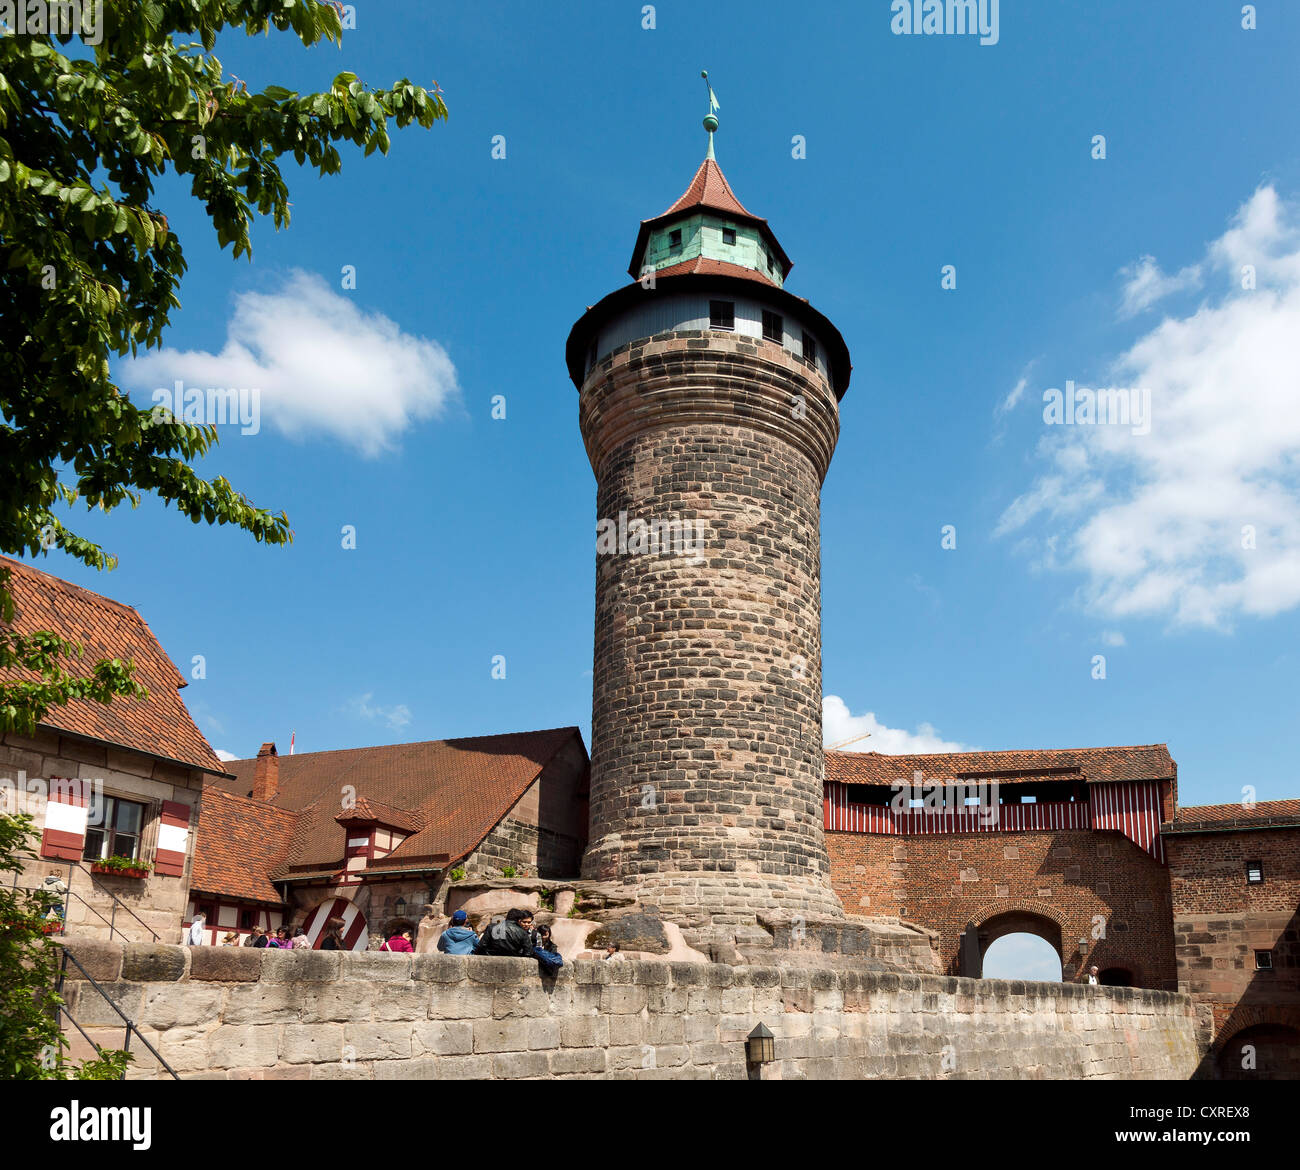 Turm der Kaiserburg, Kaiserburg, Nürnberg, Mittelfranken, Franken, Bayern, Deutschland, Europa Stockfoto